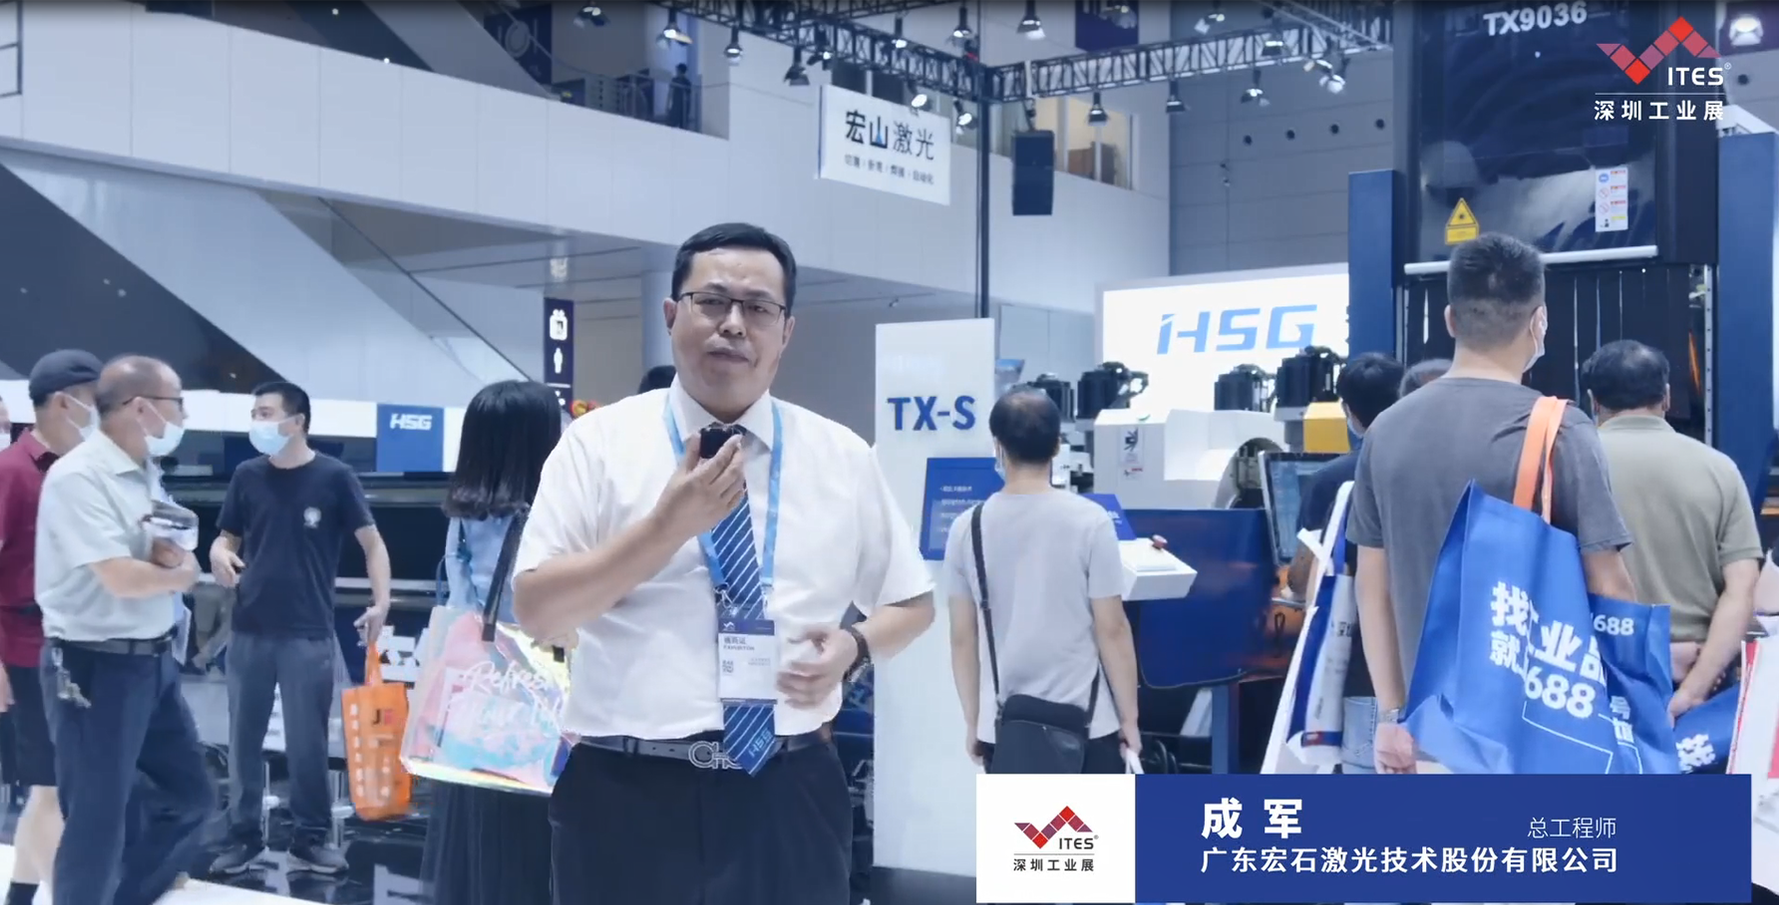 宏山激光在2022 ITES深圳工业展现带来全新产品40KW GH VI总线高功率激光切割机等多款高端新品，让我们一起洞悉工业技术新趋势。